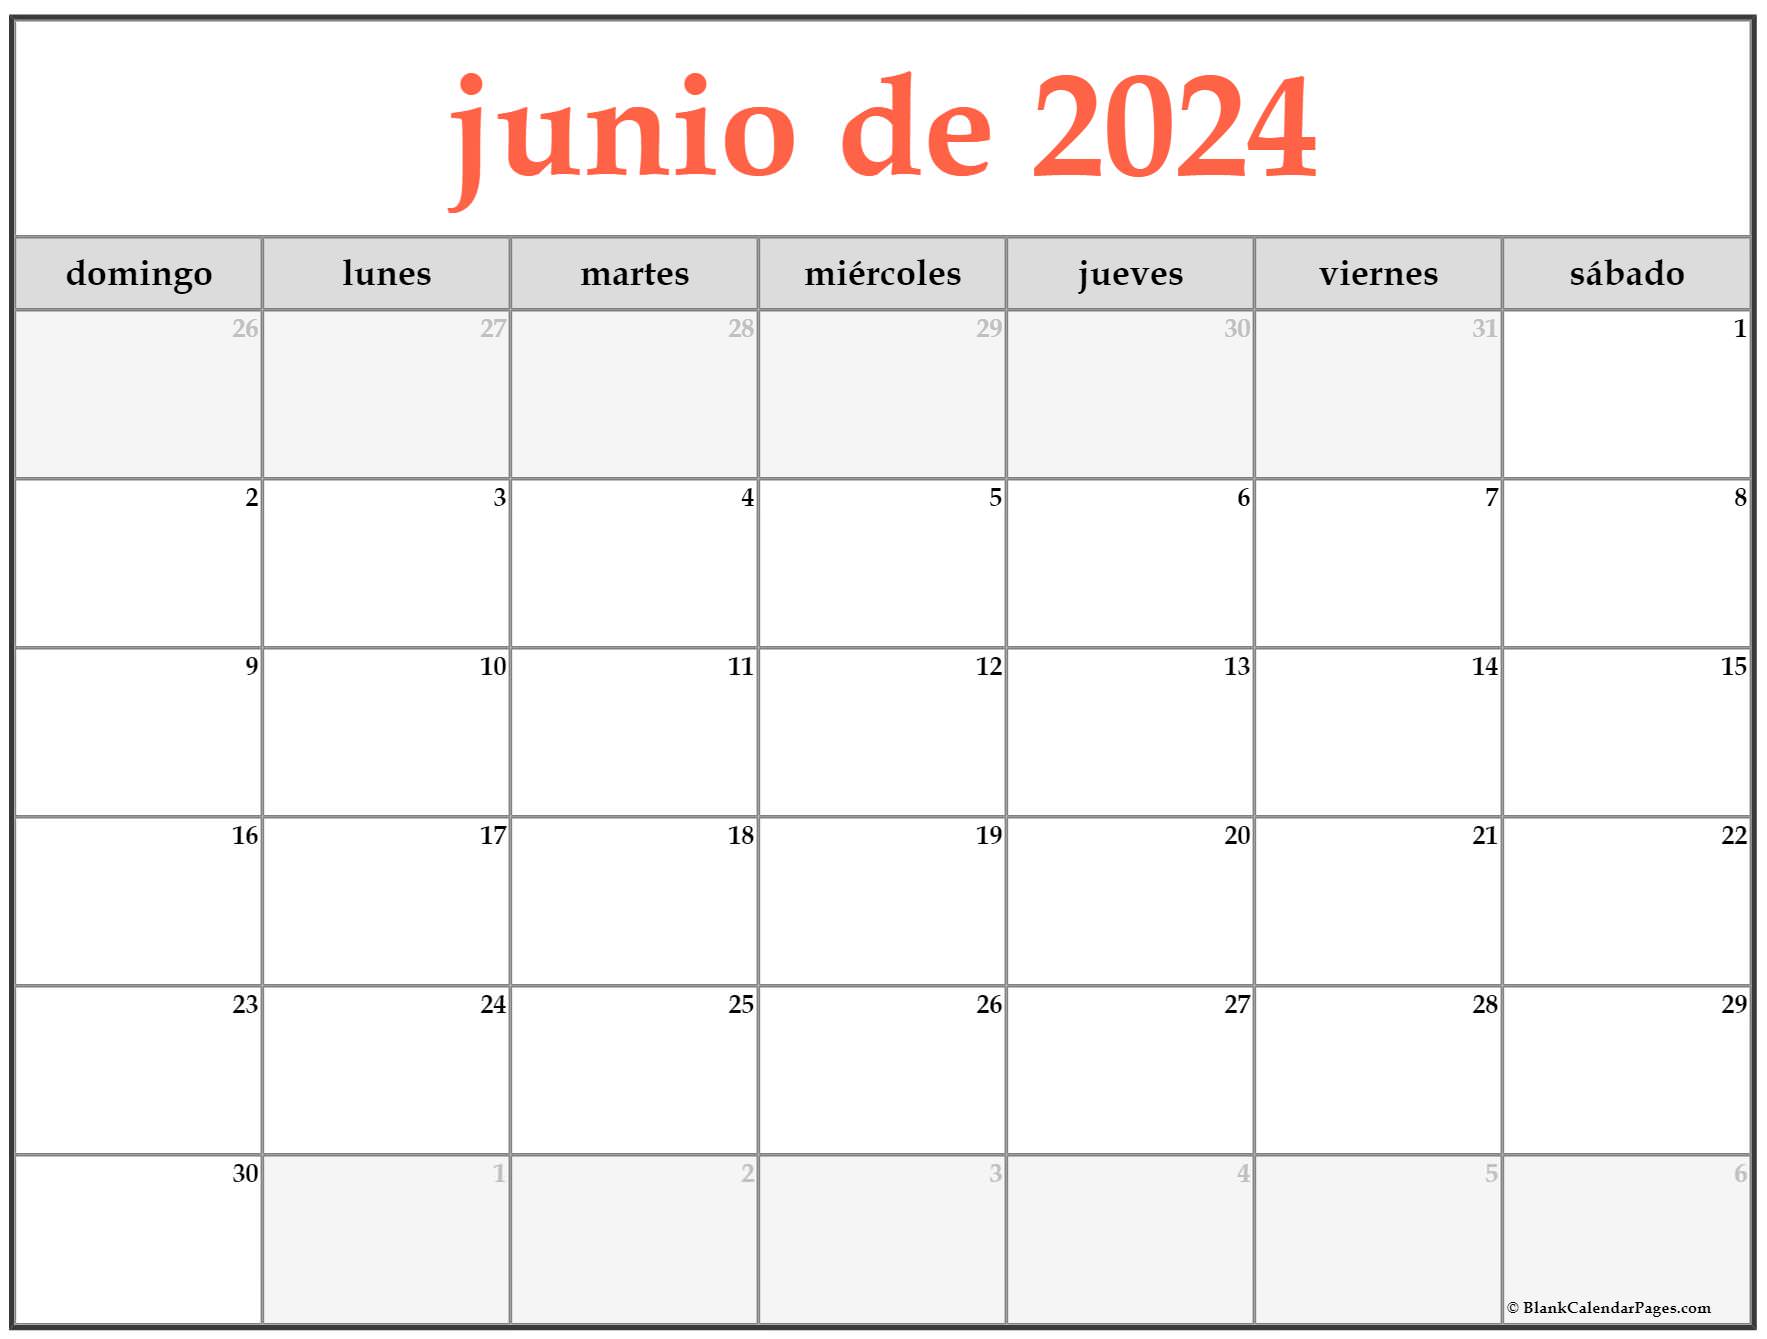 Calendario Junio 2023 2024 El Calendario Junio 2023 2024 Para Reverasite